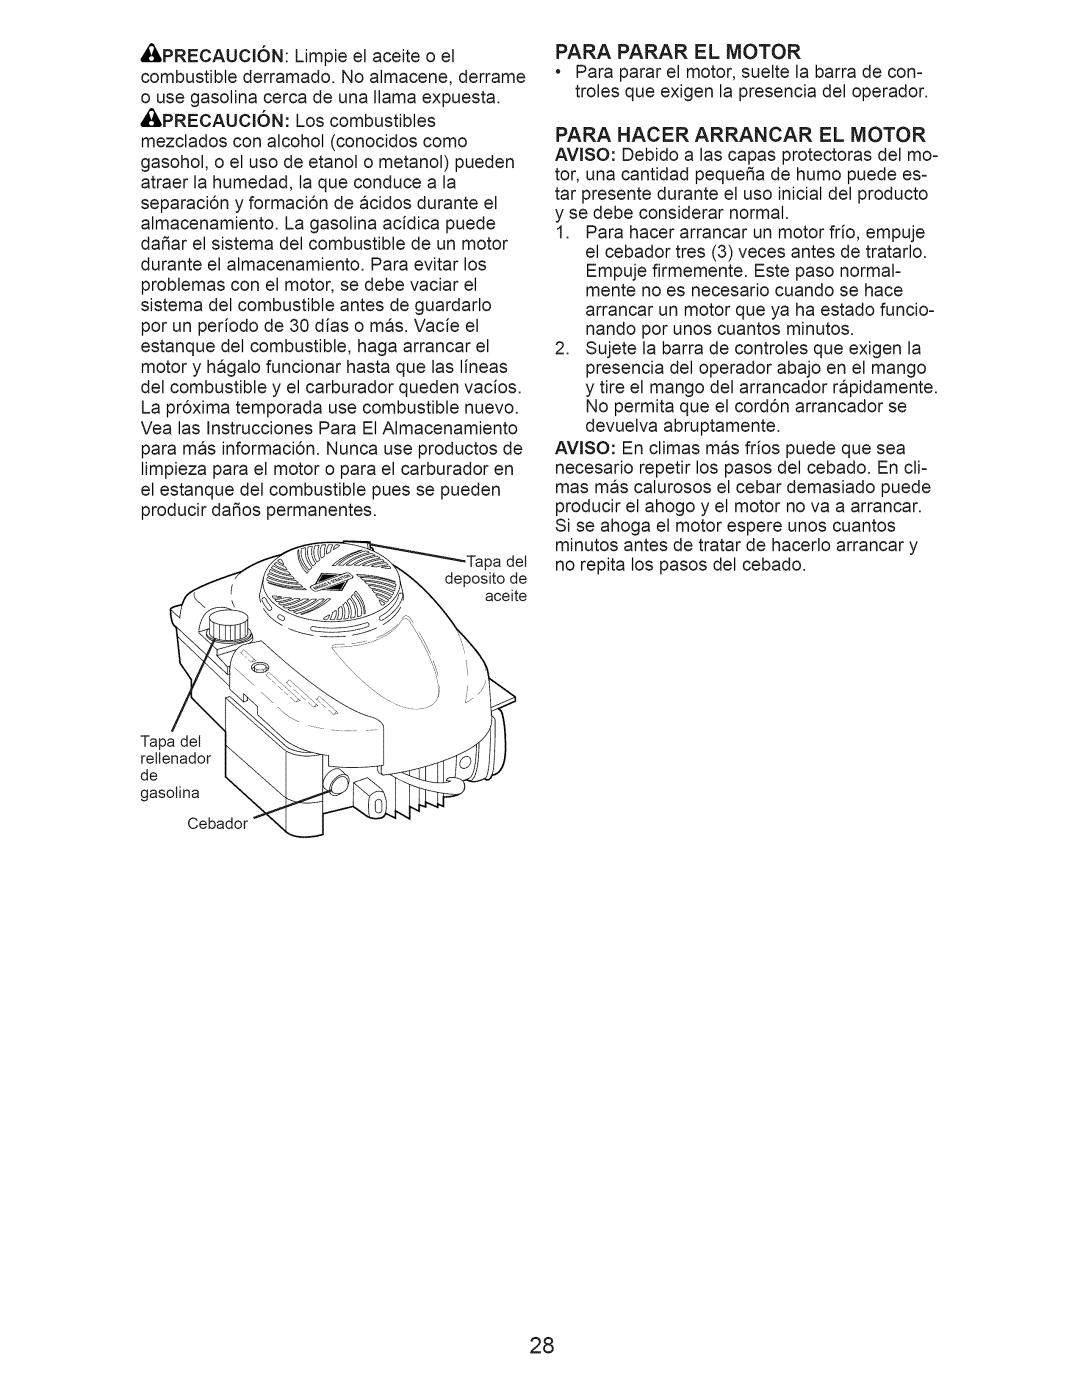 Craftsman 917.376234 manual Para Hacer Arrancar El Motor 